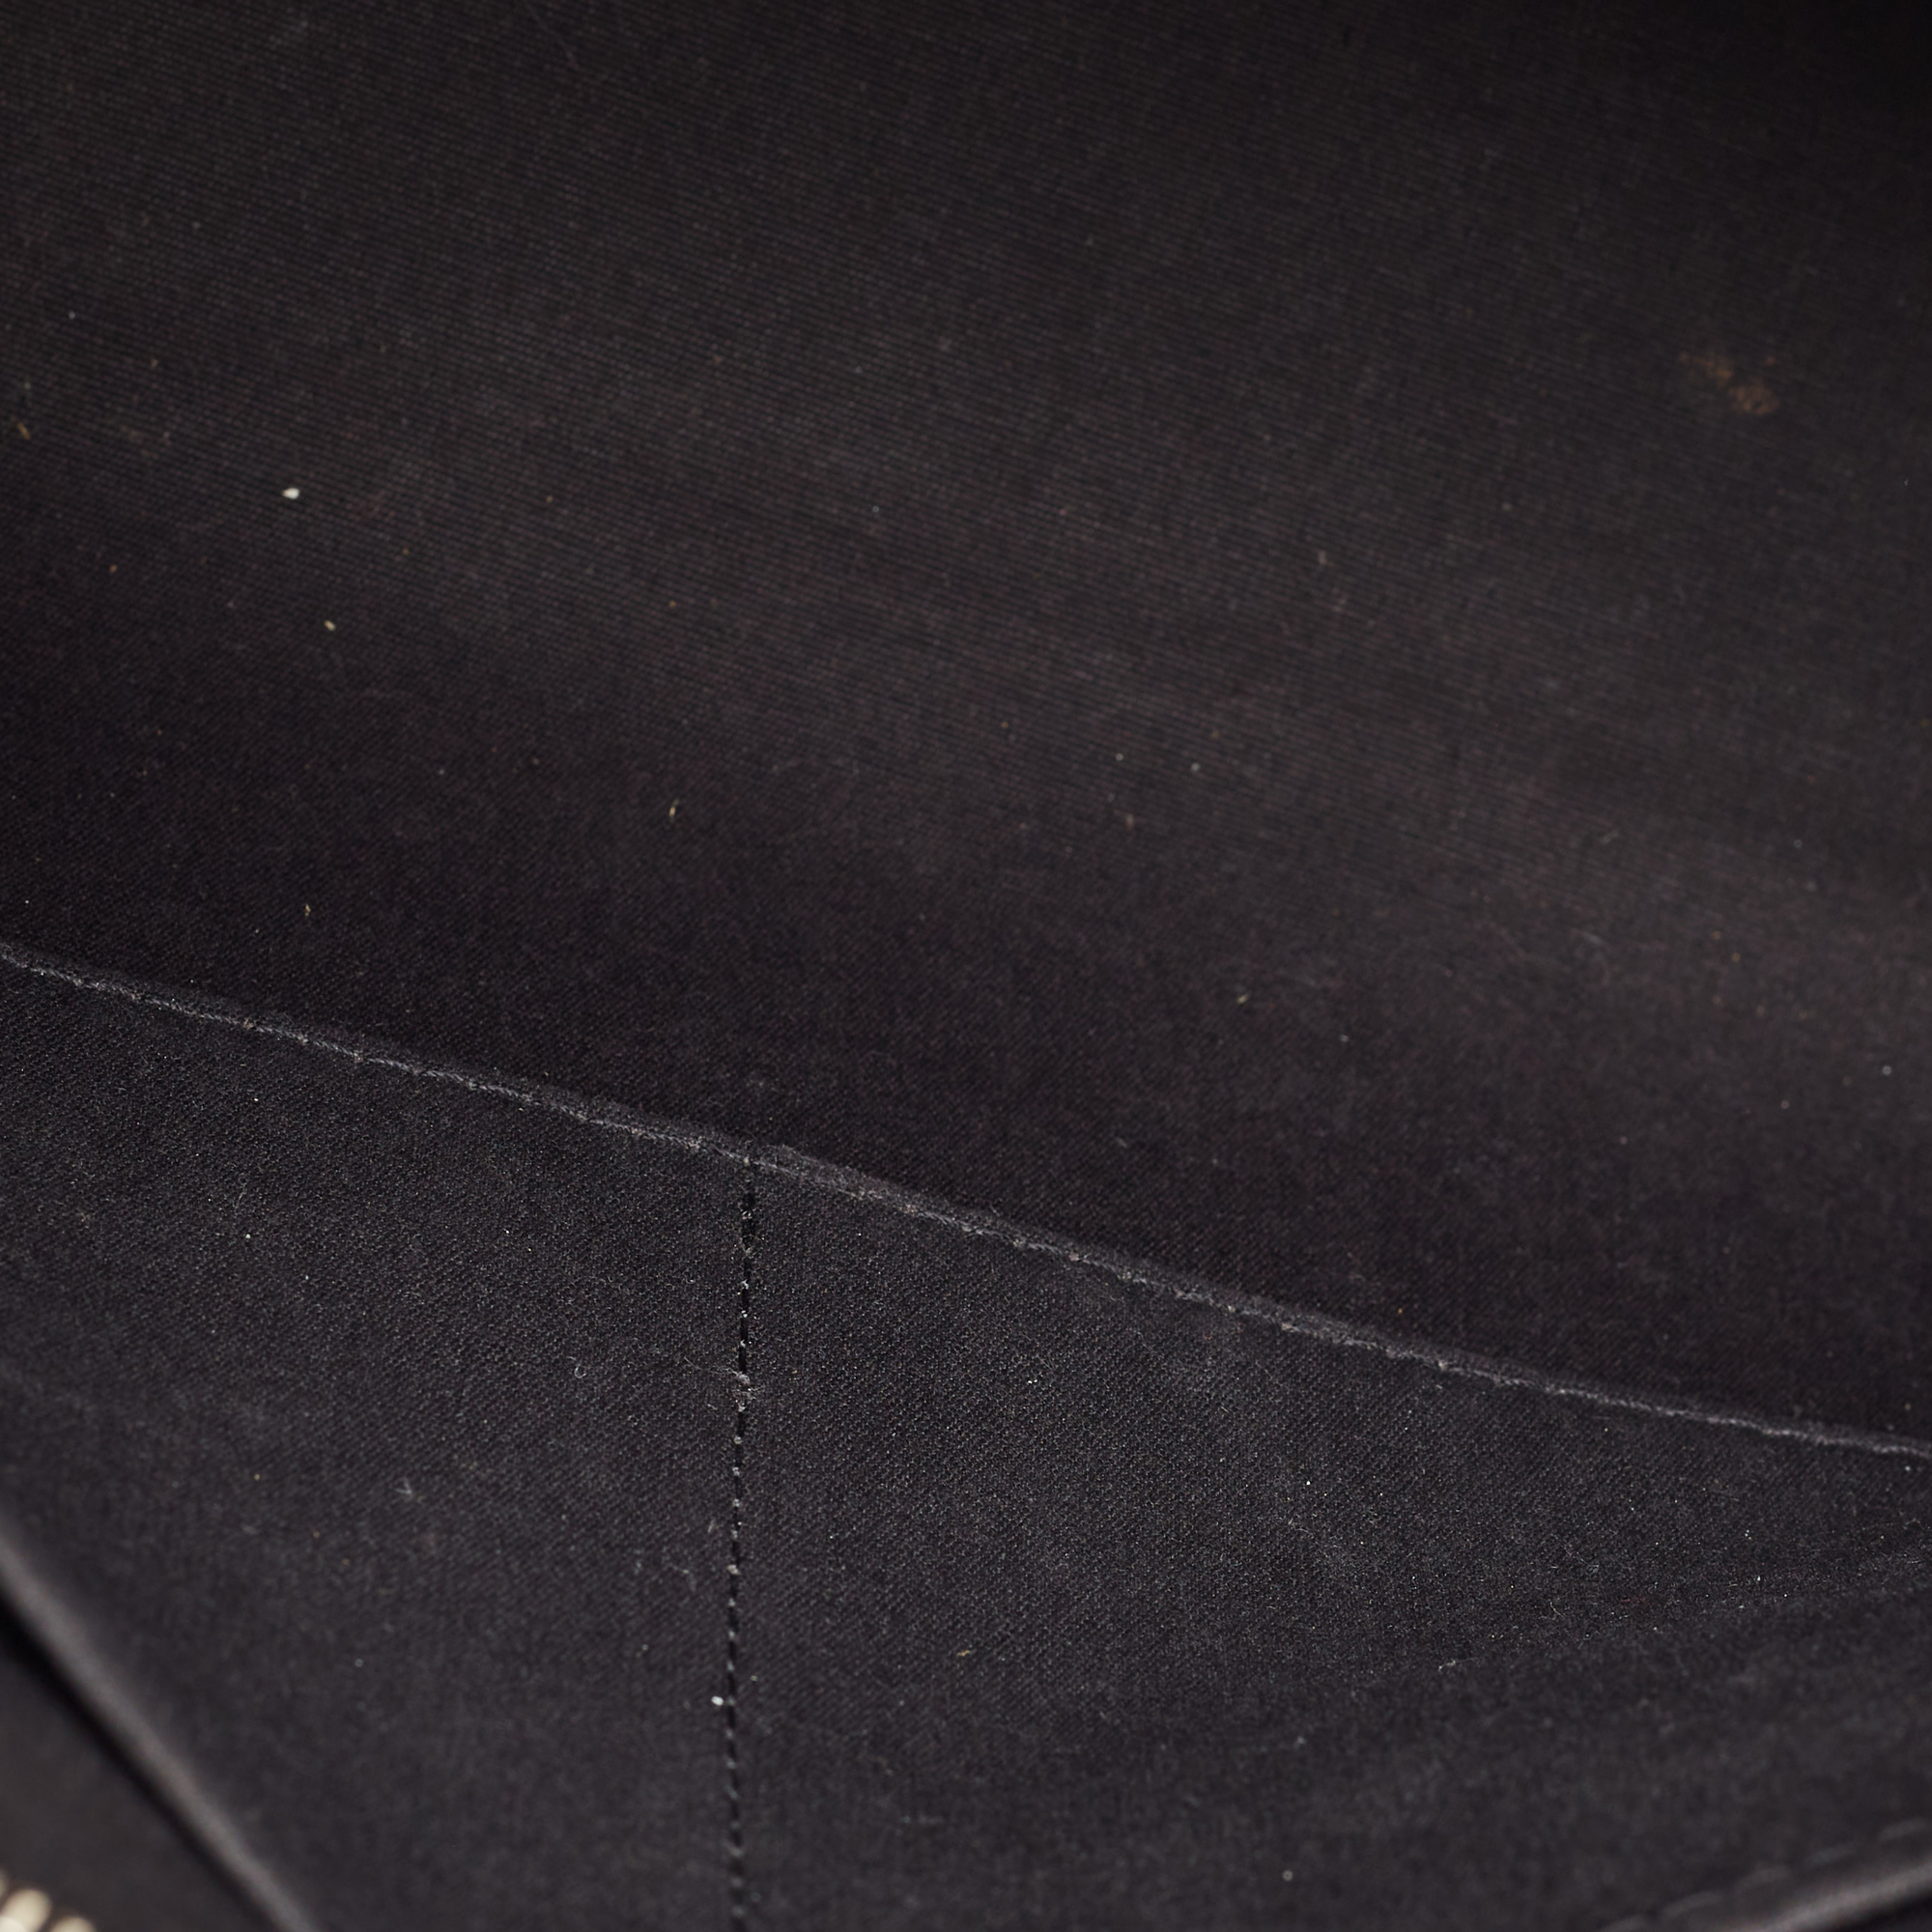 Louis Vuitton Black Epi Leather Brea MM Bag